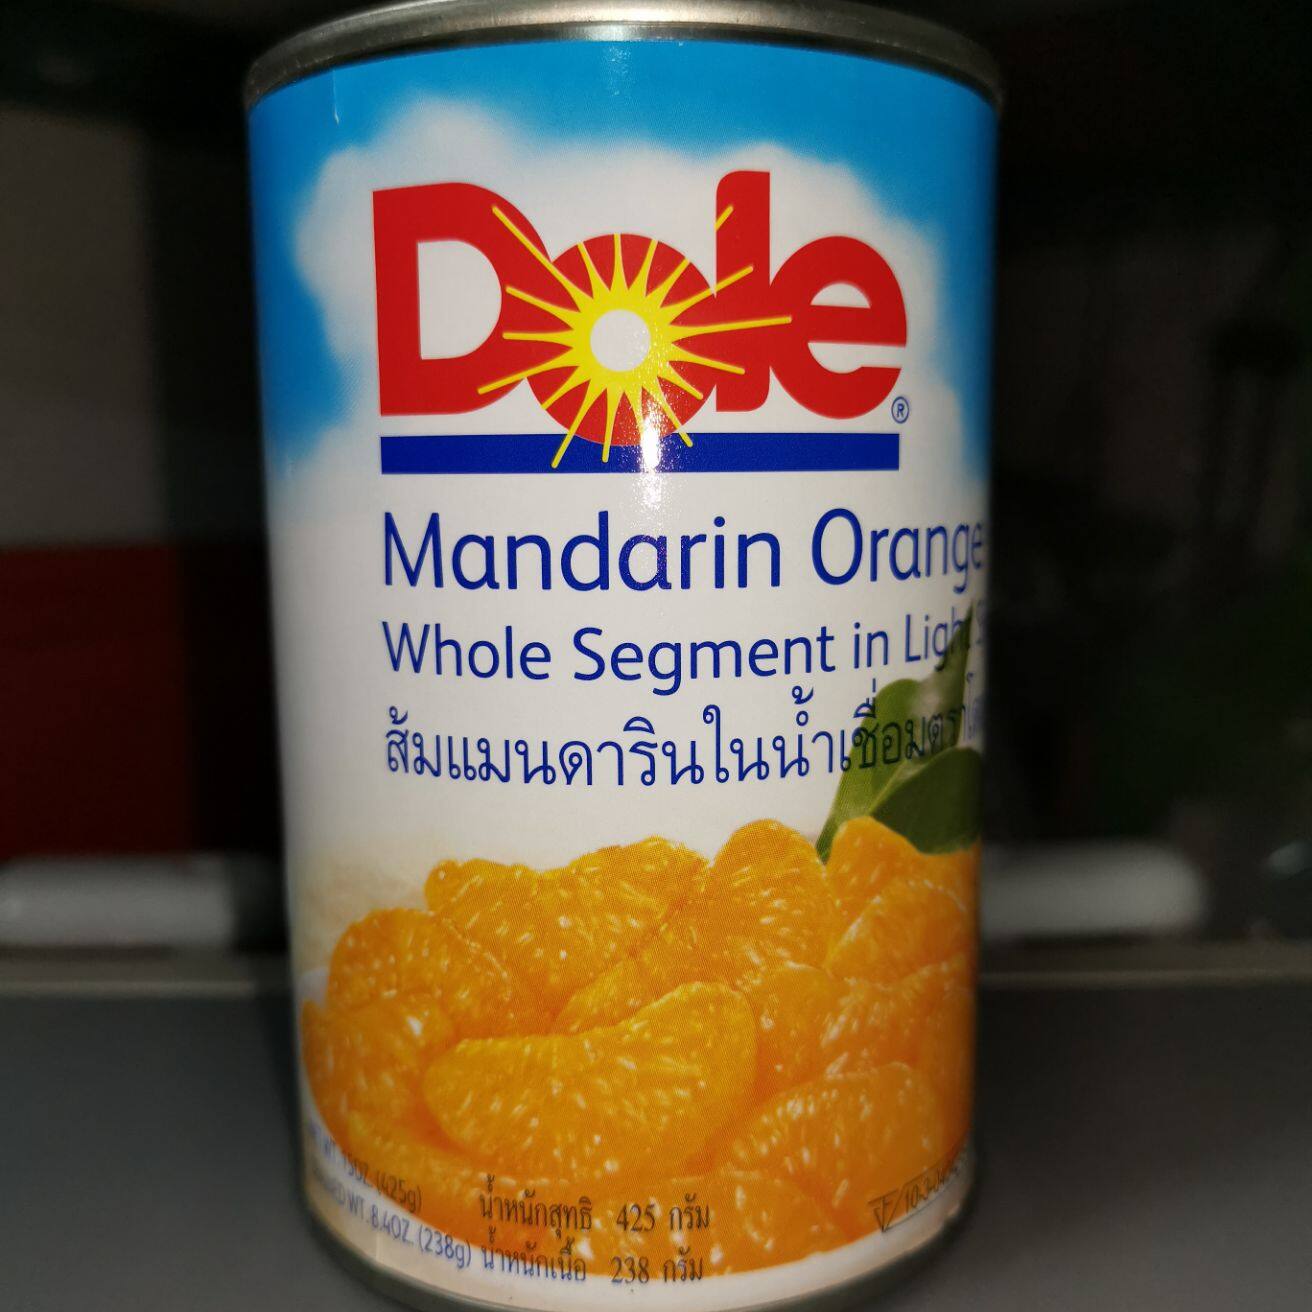 กลีบส้มแมนดารินในน้ำเชื่อม ตราโดล (Dole) ปริมาณ 425กรัม 1 กระป๋อง